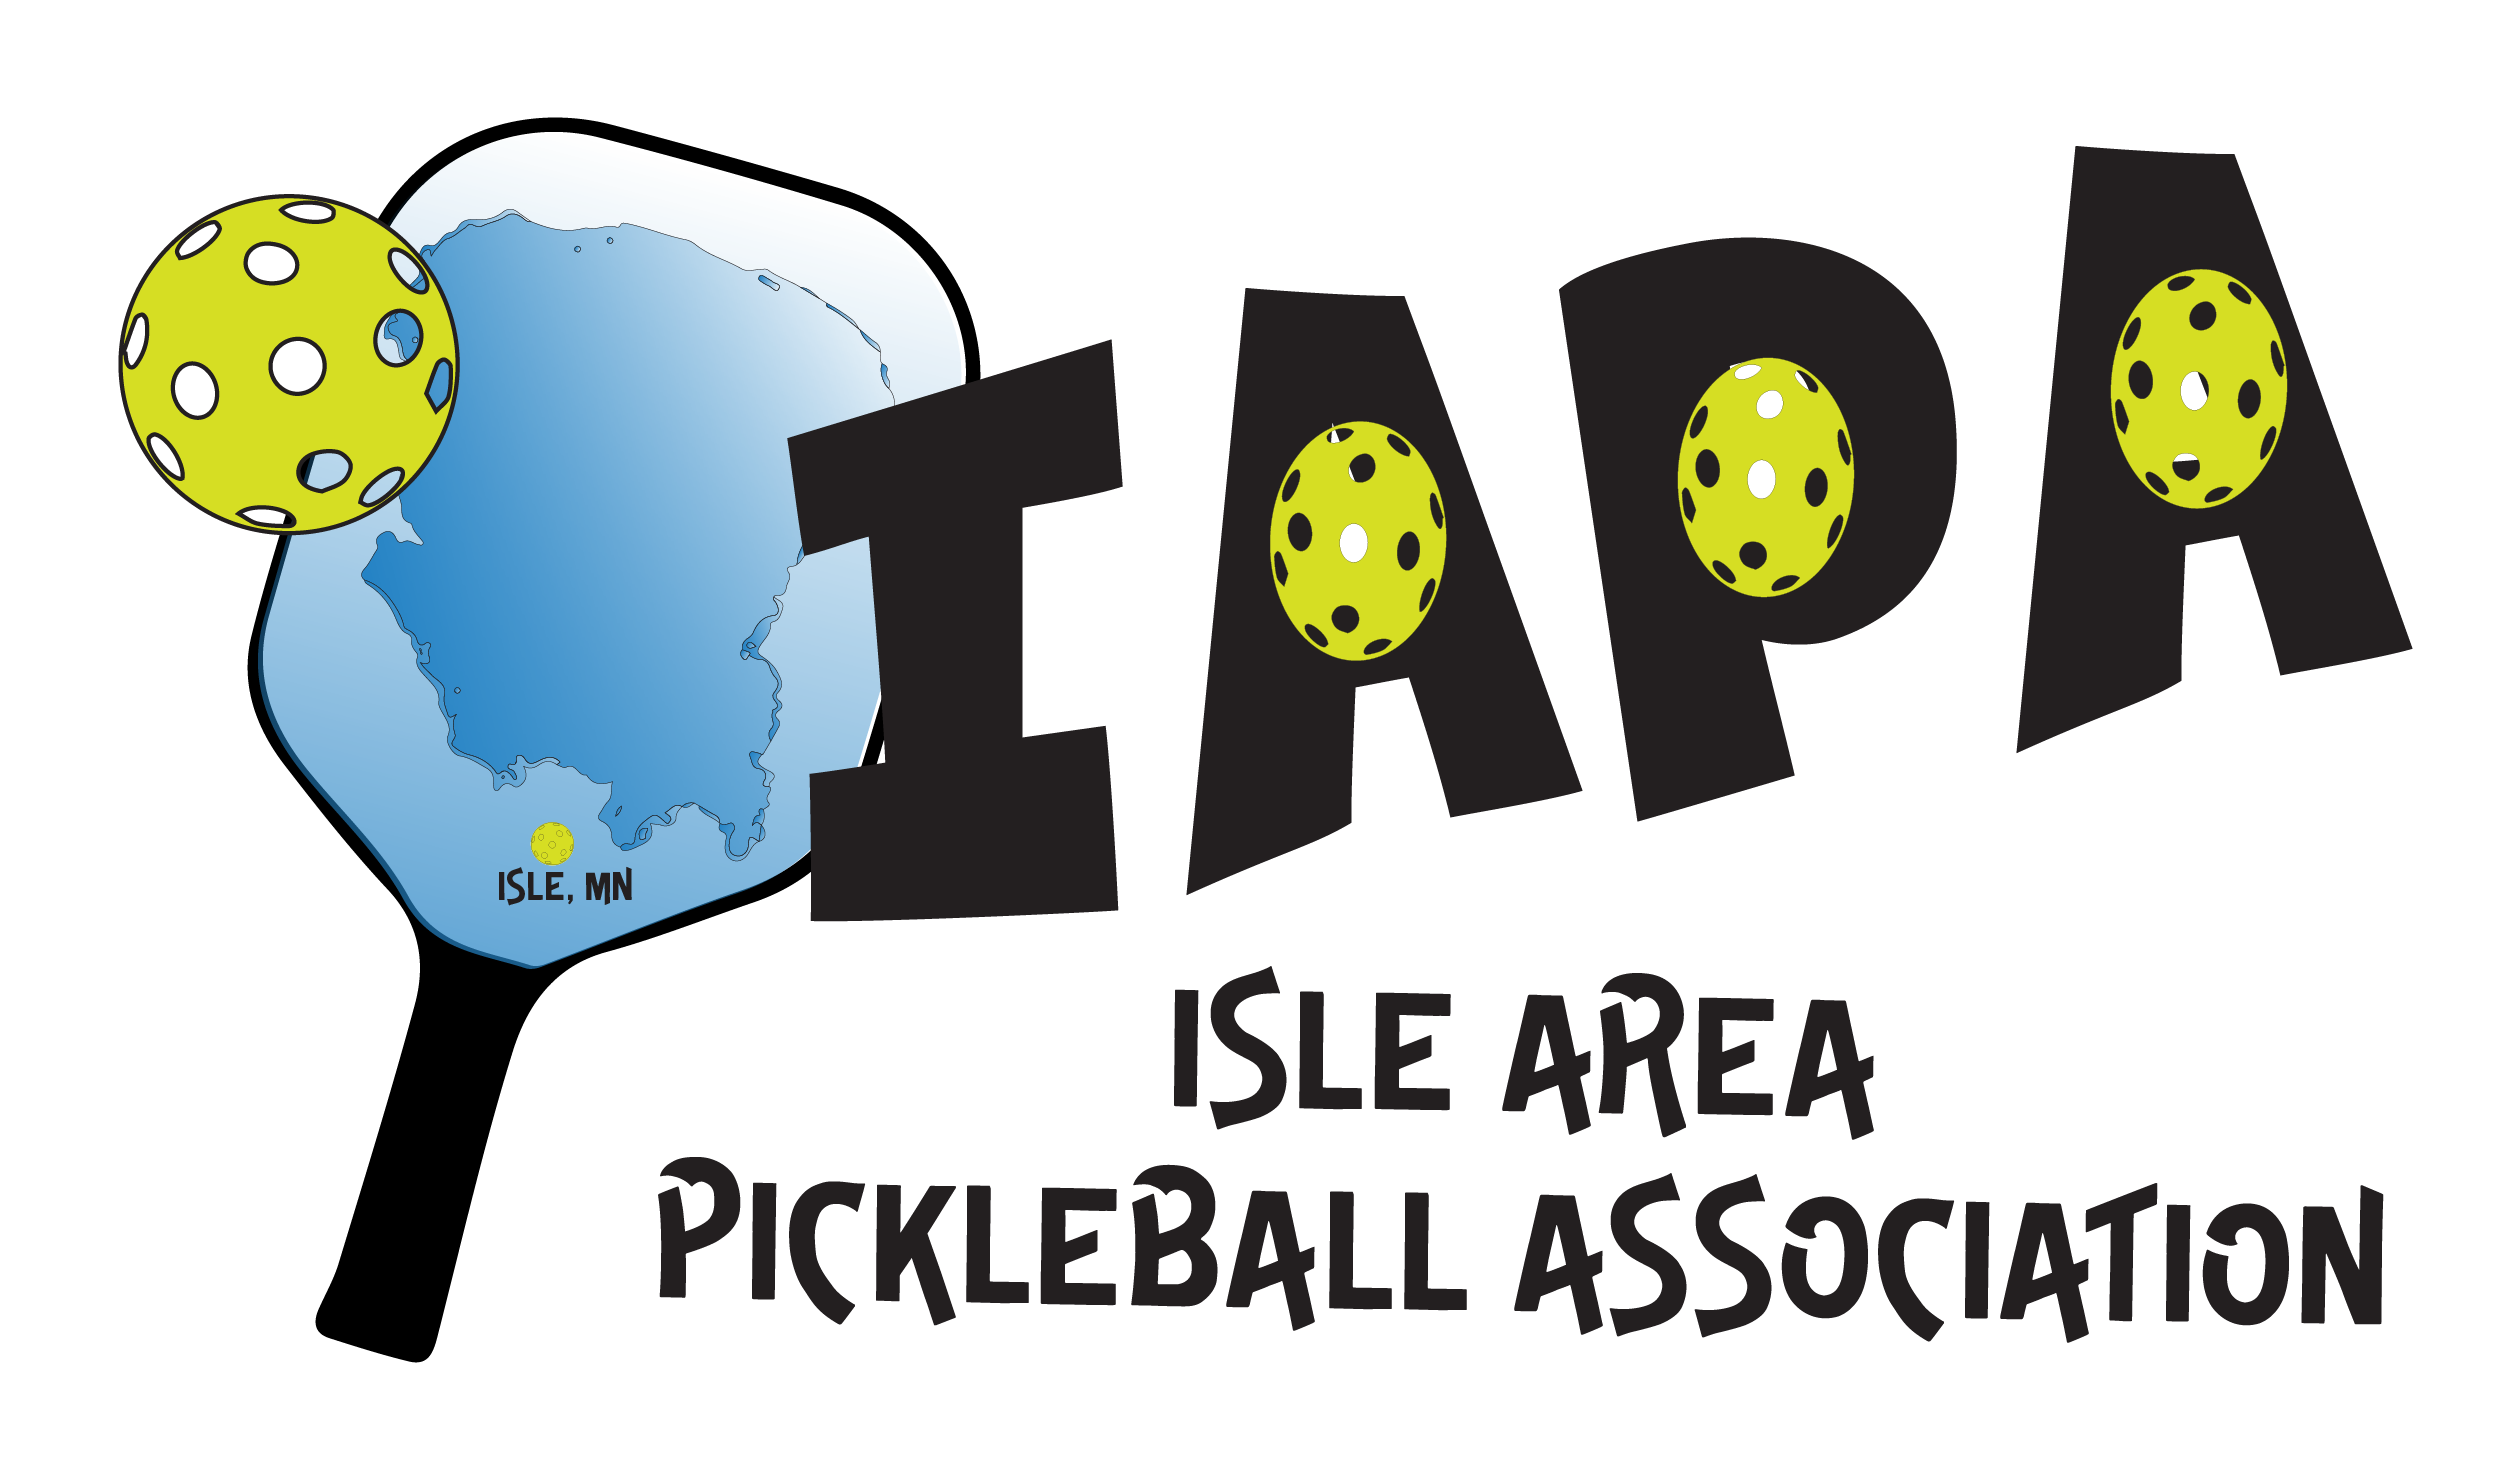 Isle Area Pickleball Association